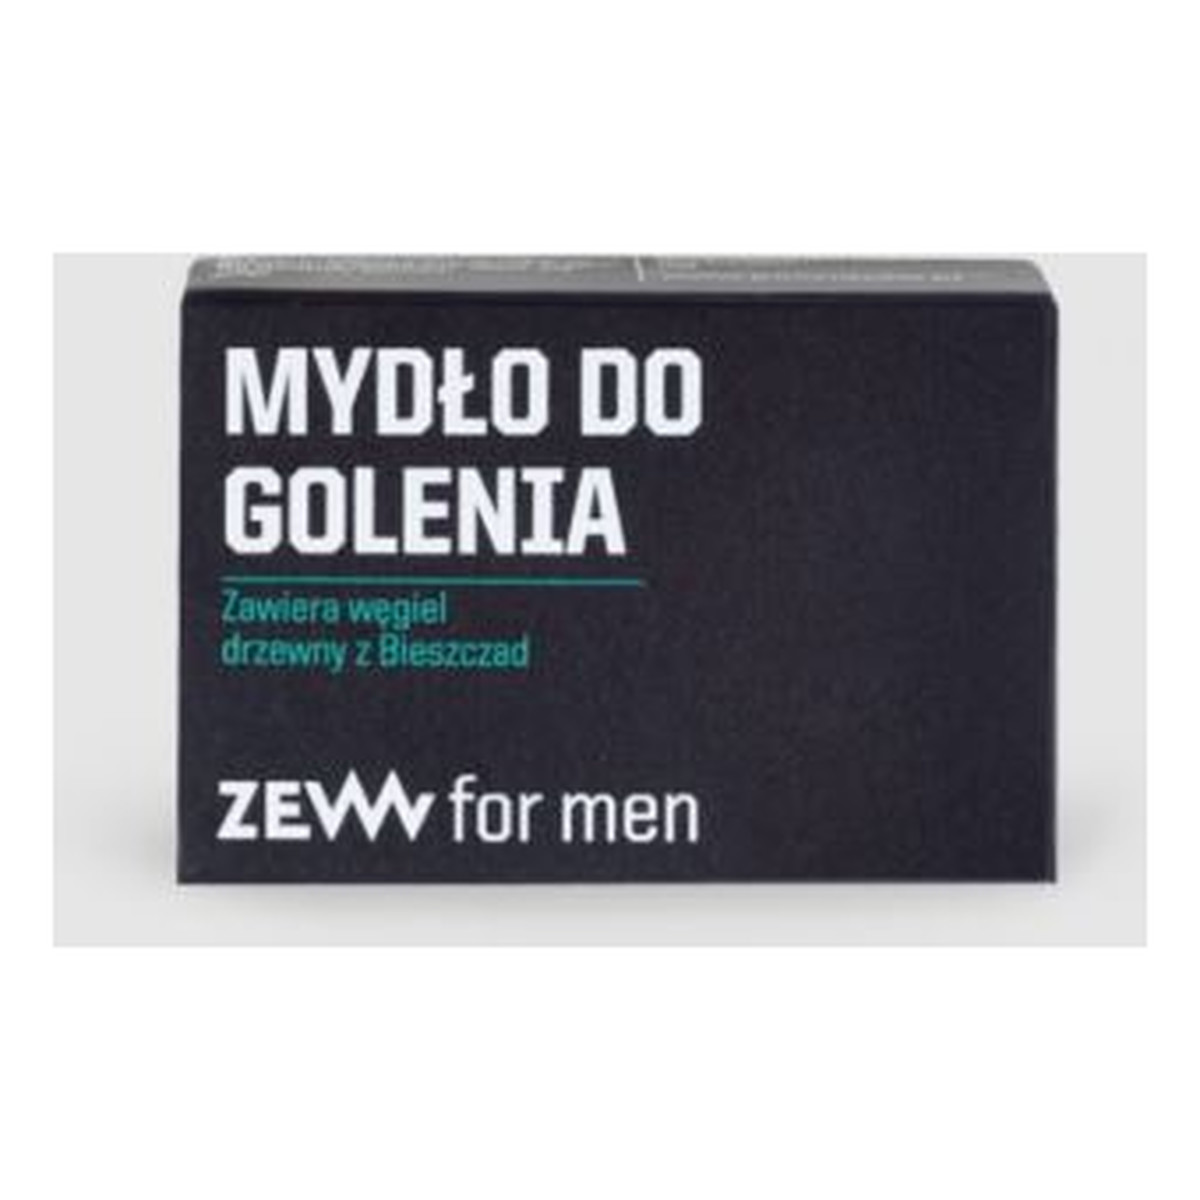 Zew For Men Mydło do golenia zawiera węgiel drzewny z Bieszczad 85ml